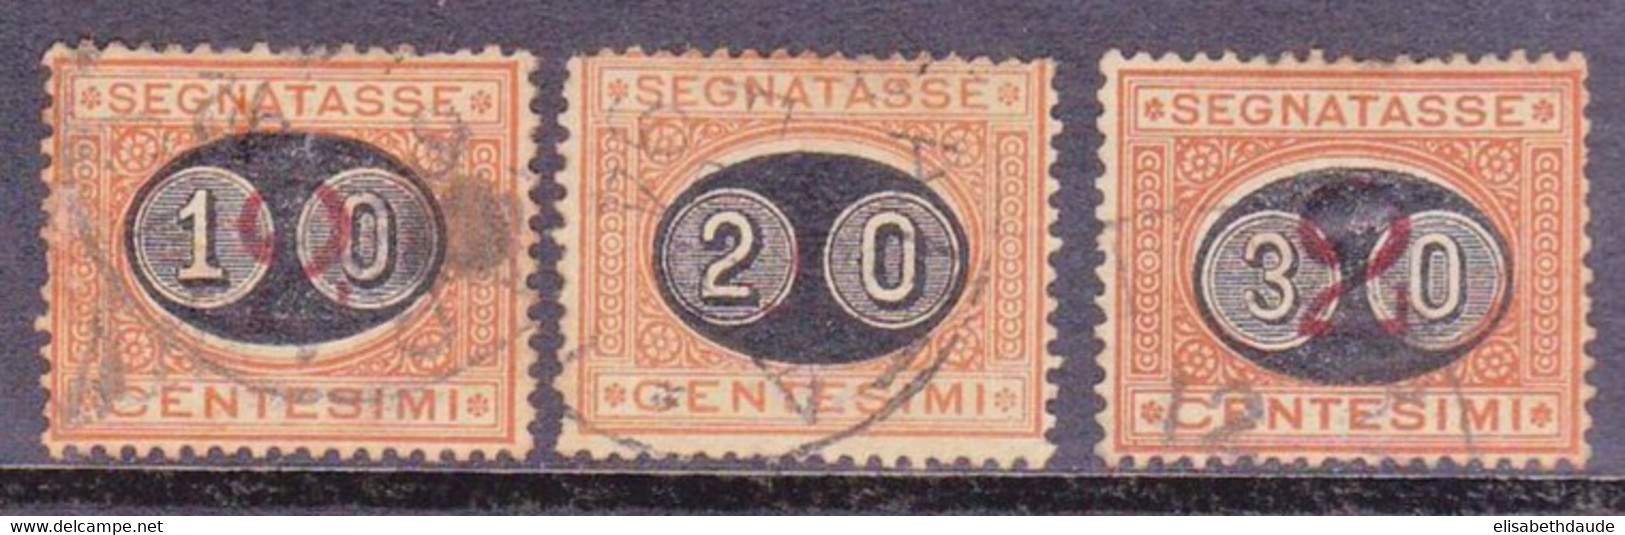 ITALIE - 1890 - YVERT N°22/24 OBLITERES - TAXE - COTE = 57 EUROS - Gebraucht